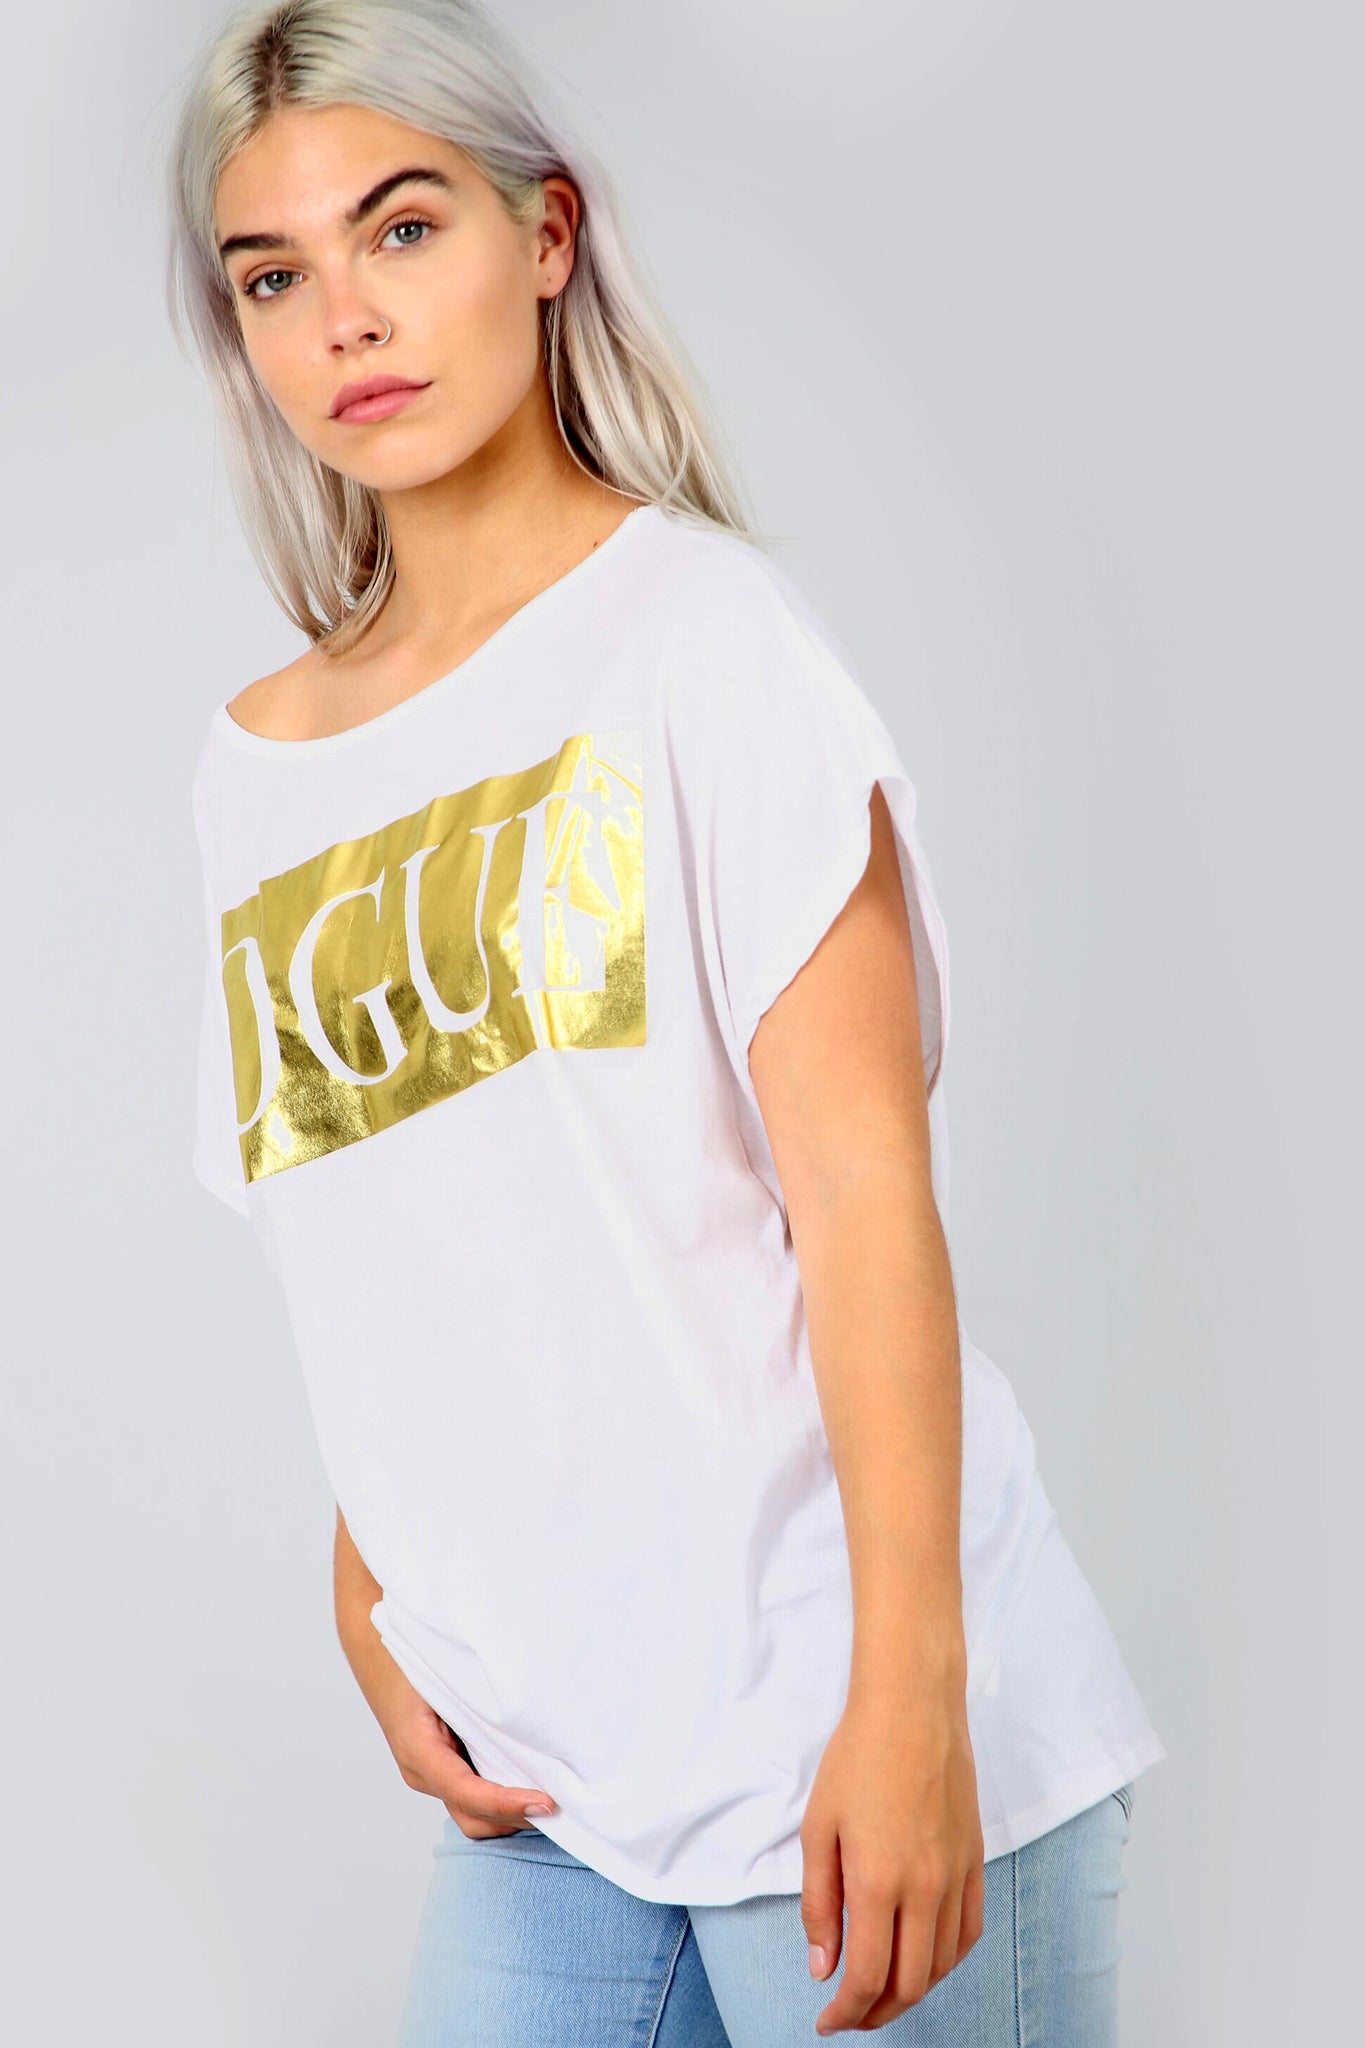 Oversize Vogue Metallic Slogan Print Grey Tshirt - bejealous-com